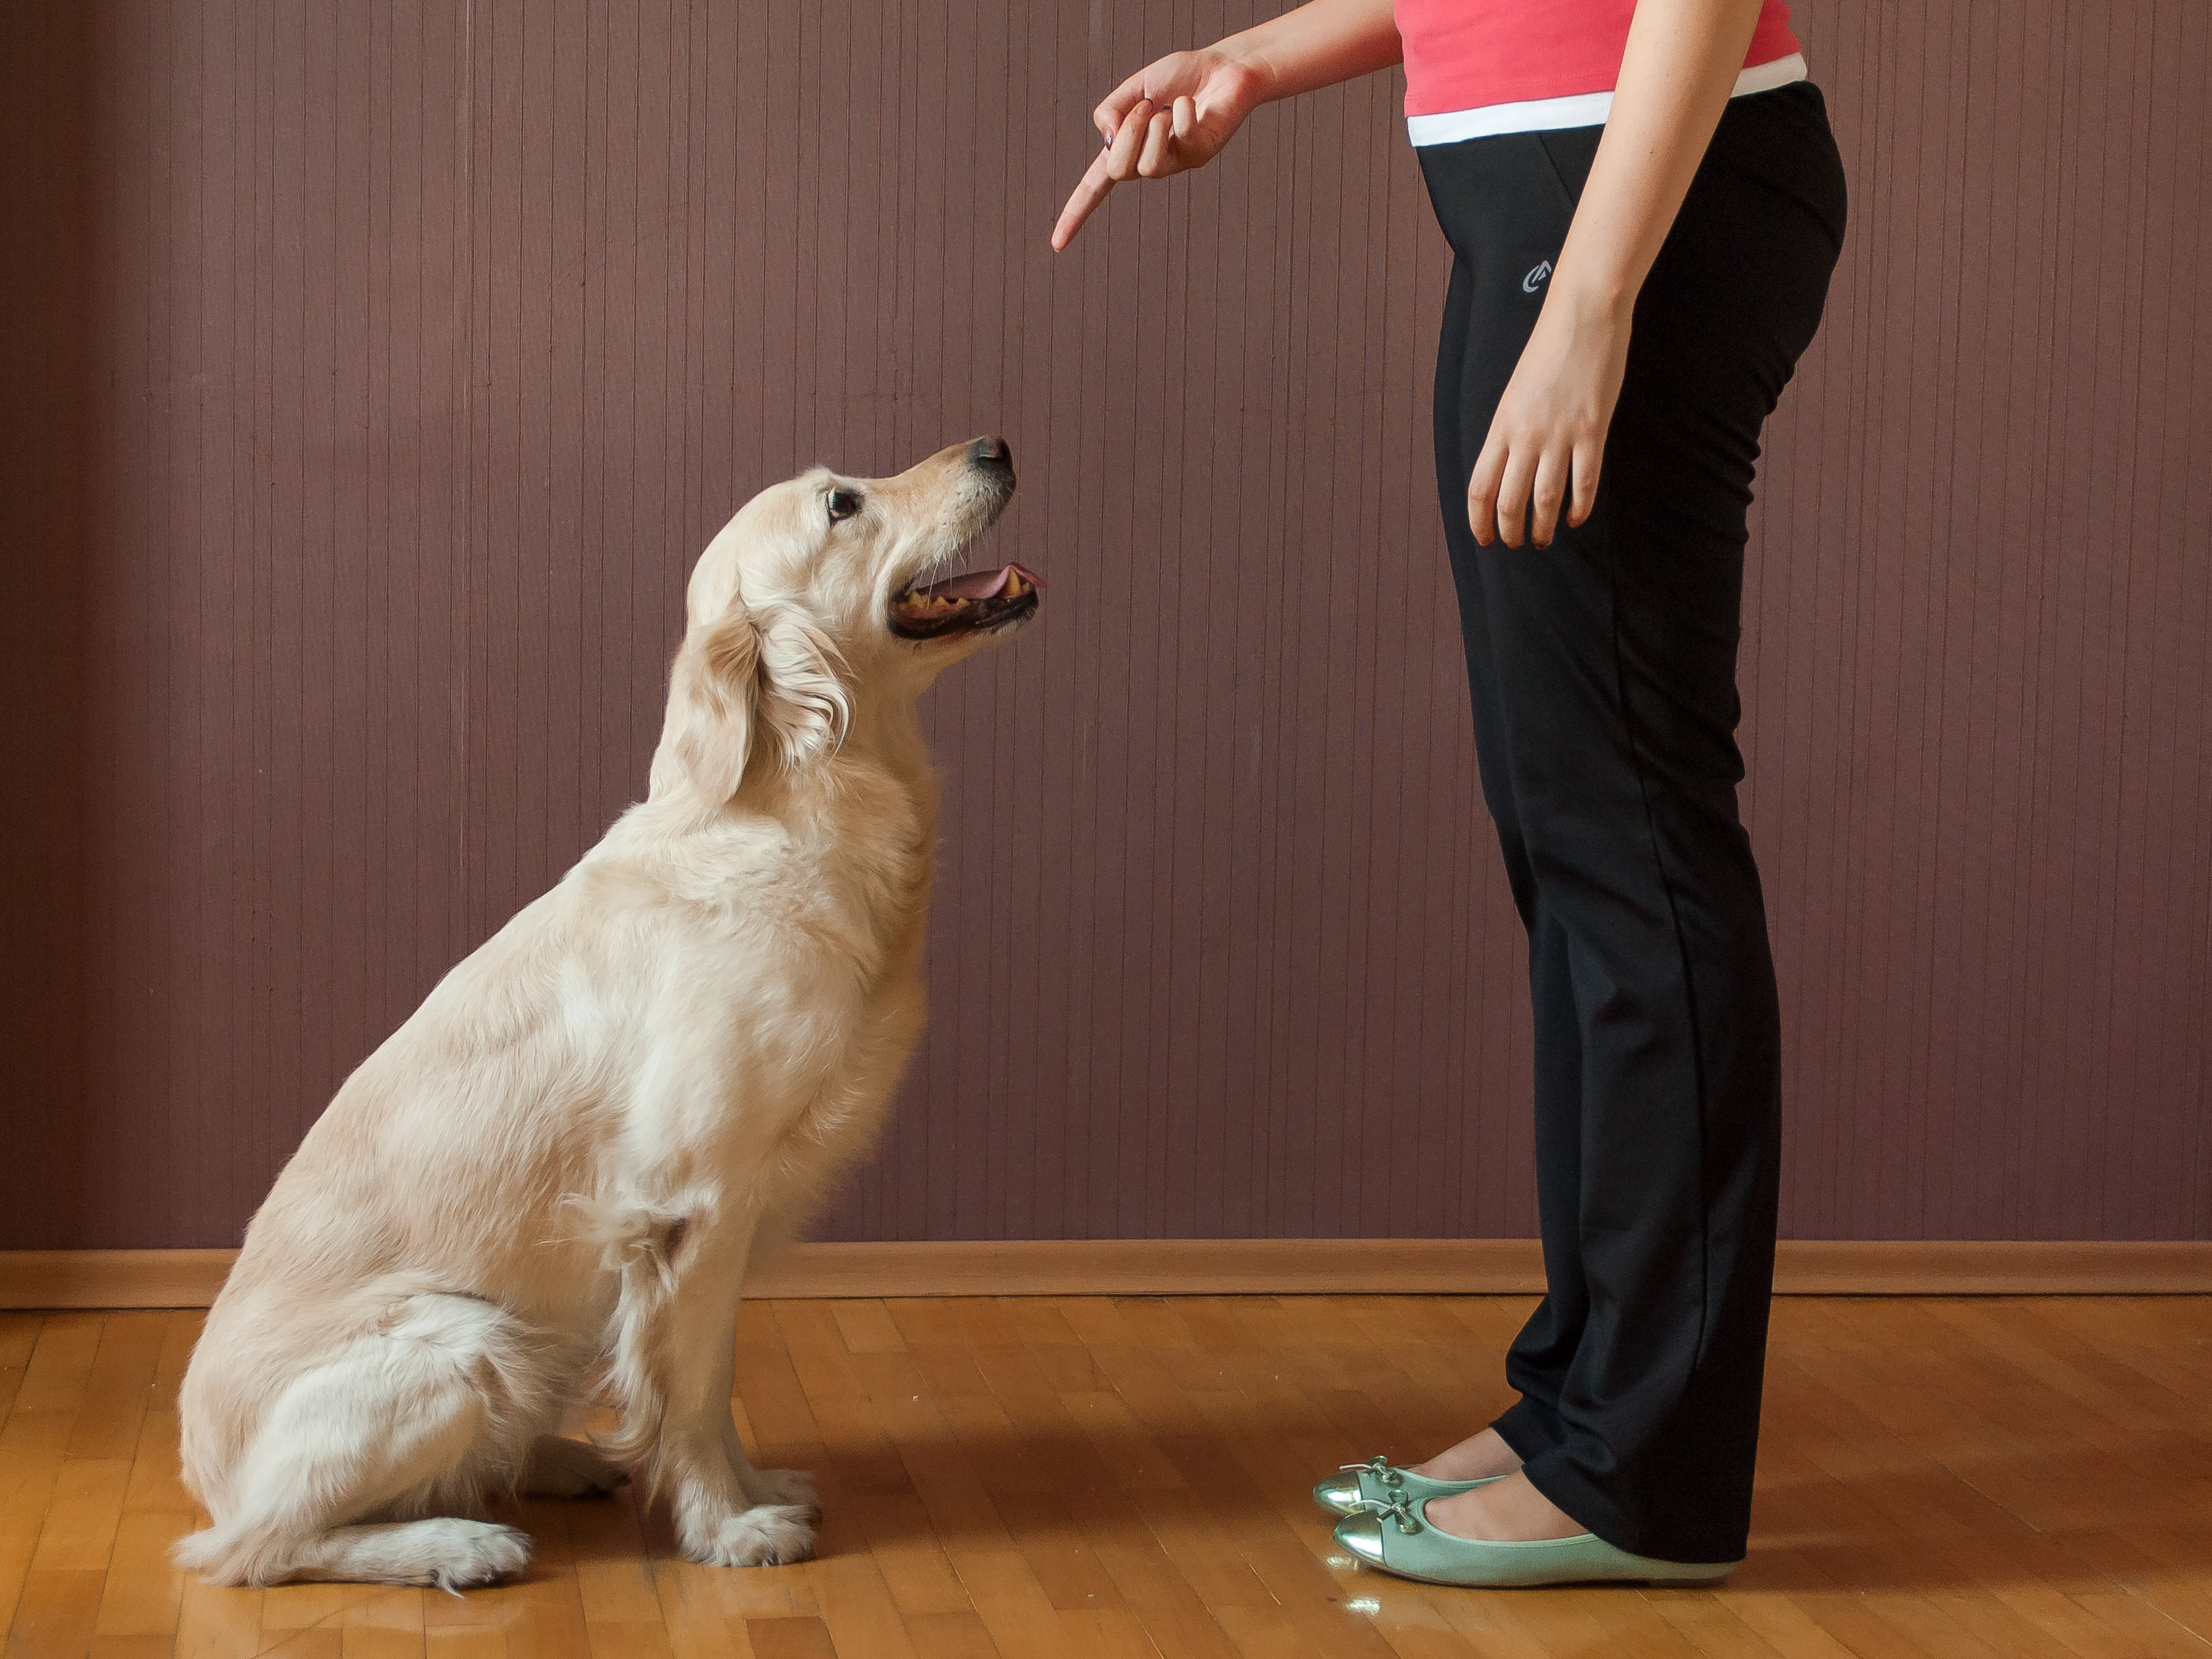 Adestramento adequado pode resolver quase todos os problemas de comportamento do seu cão. Com consistencia e reforço positivo, em pouco tempo os resultados podem ser notados.